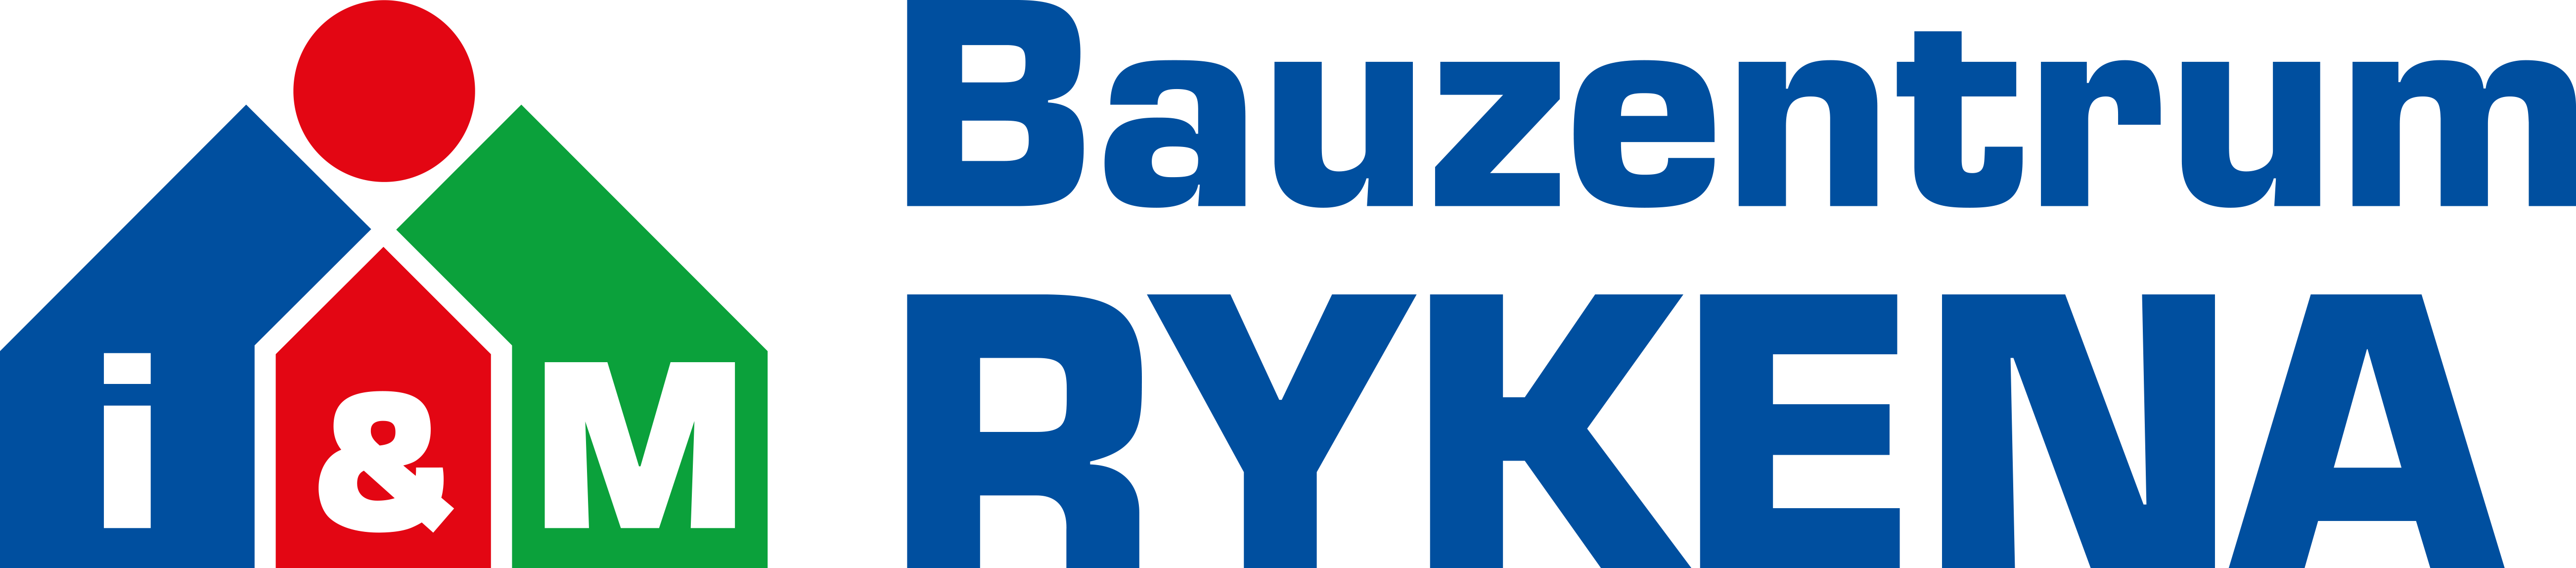 Berumerfehner Holz-u.Baustoff- logo